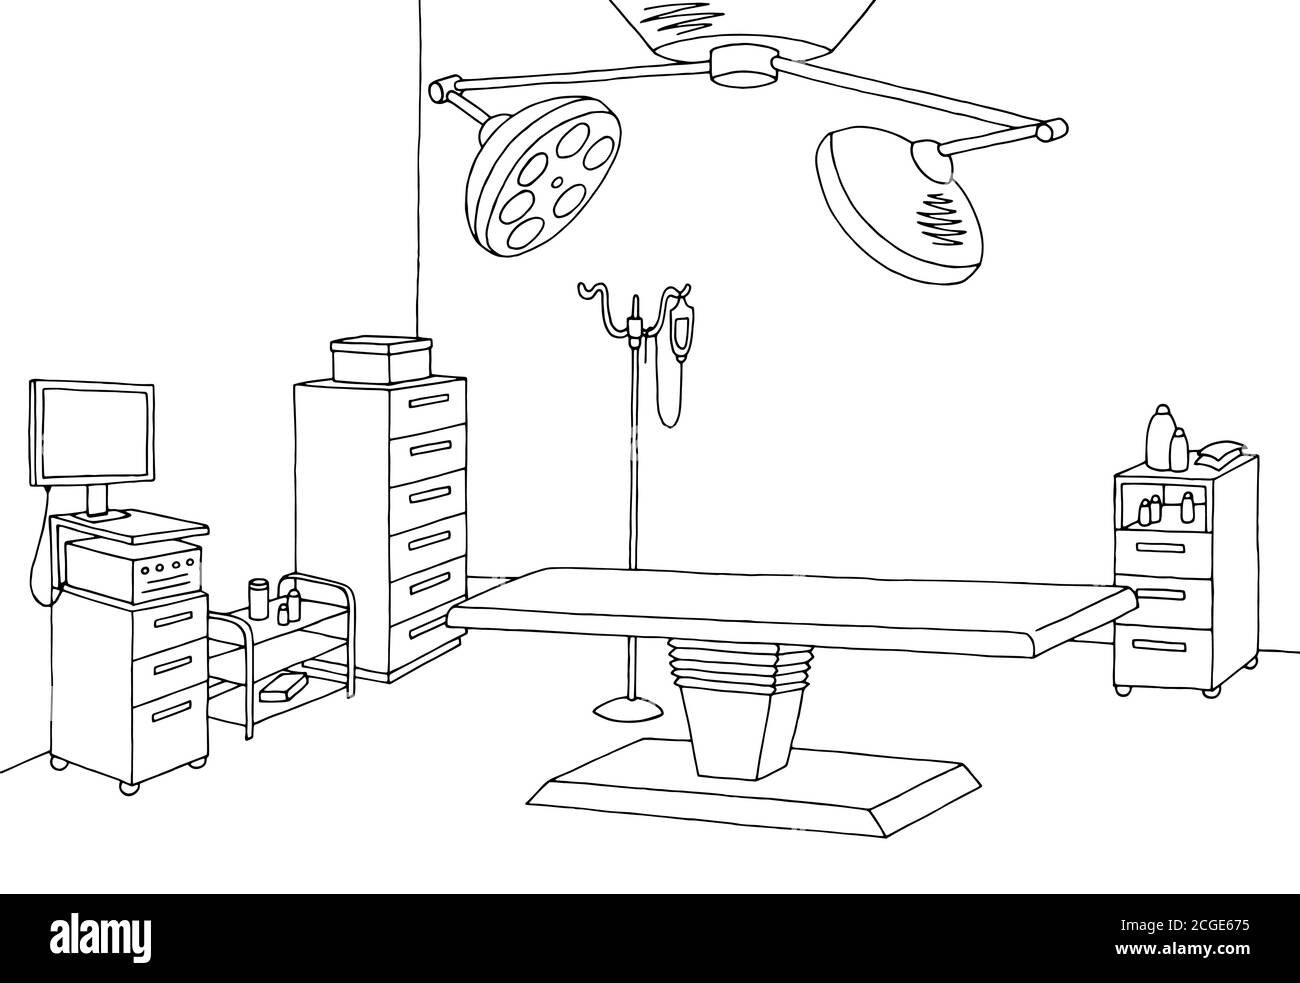 Schéma de l'intérieur de la salle d'opération, noir blanc, schéma vectoriel Illustration de Vecteur